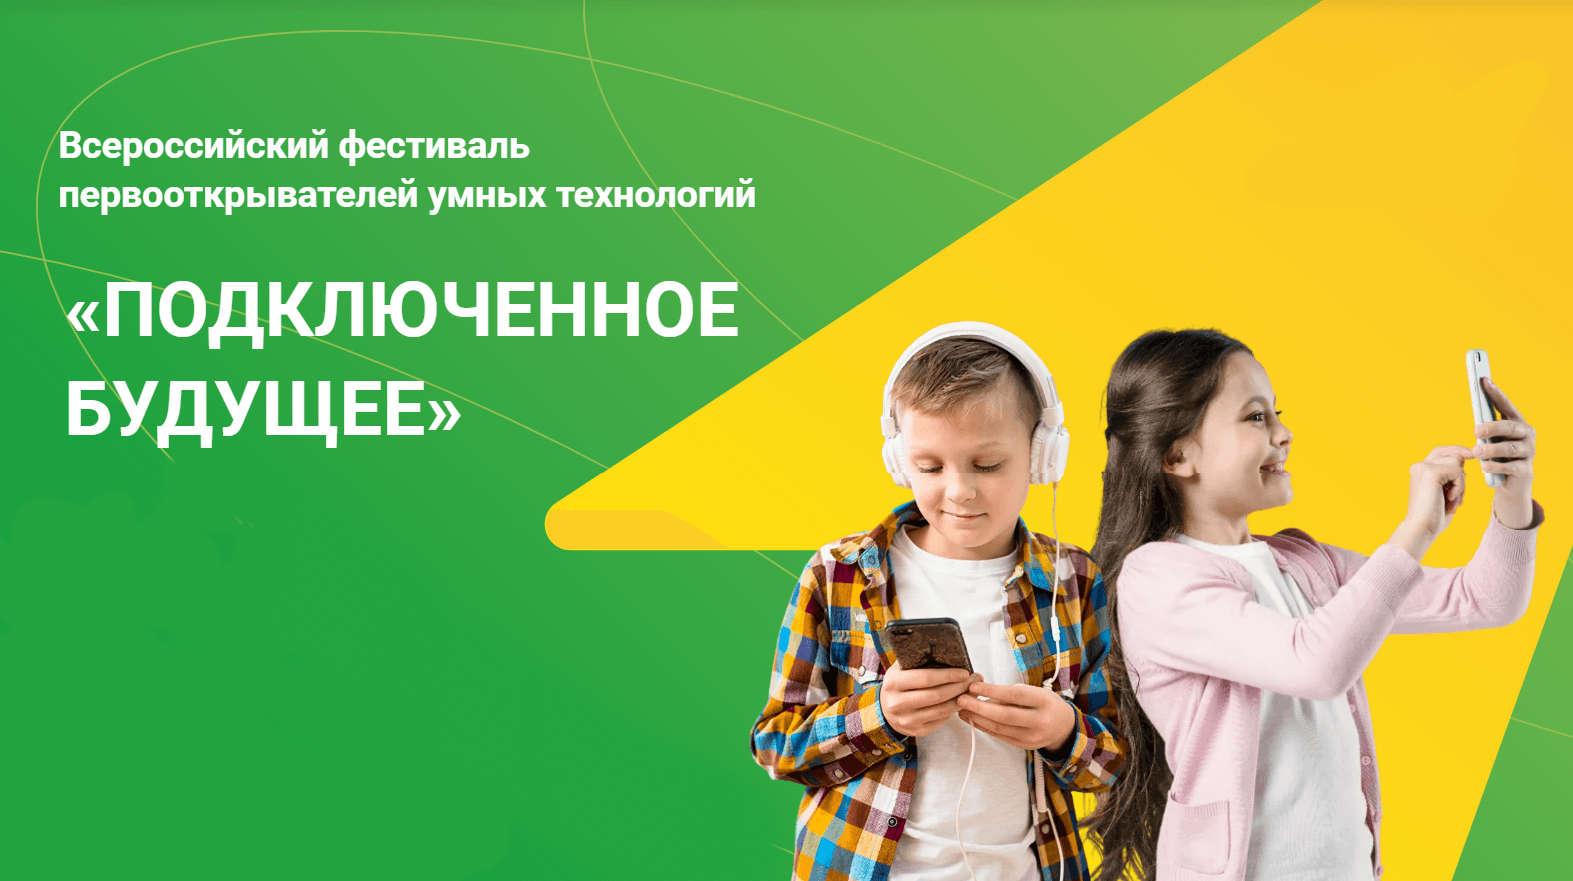 14 июля начнется Всероссийский фестиваль первооткрывателей умных технологий «Подключенное будущее»